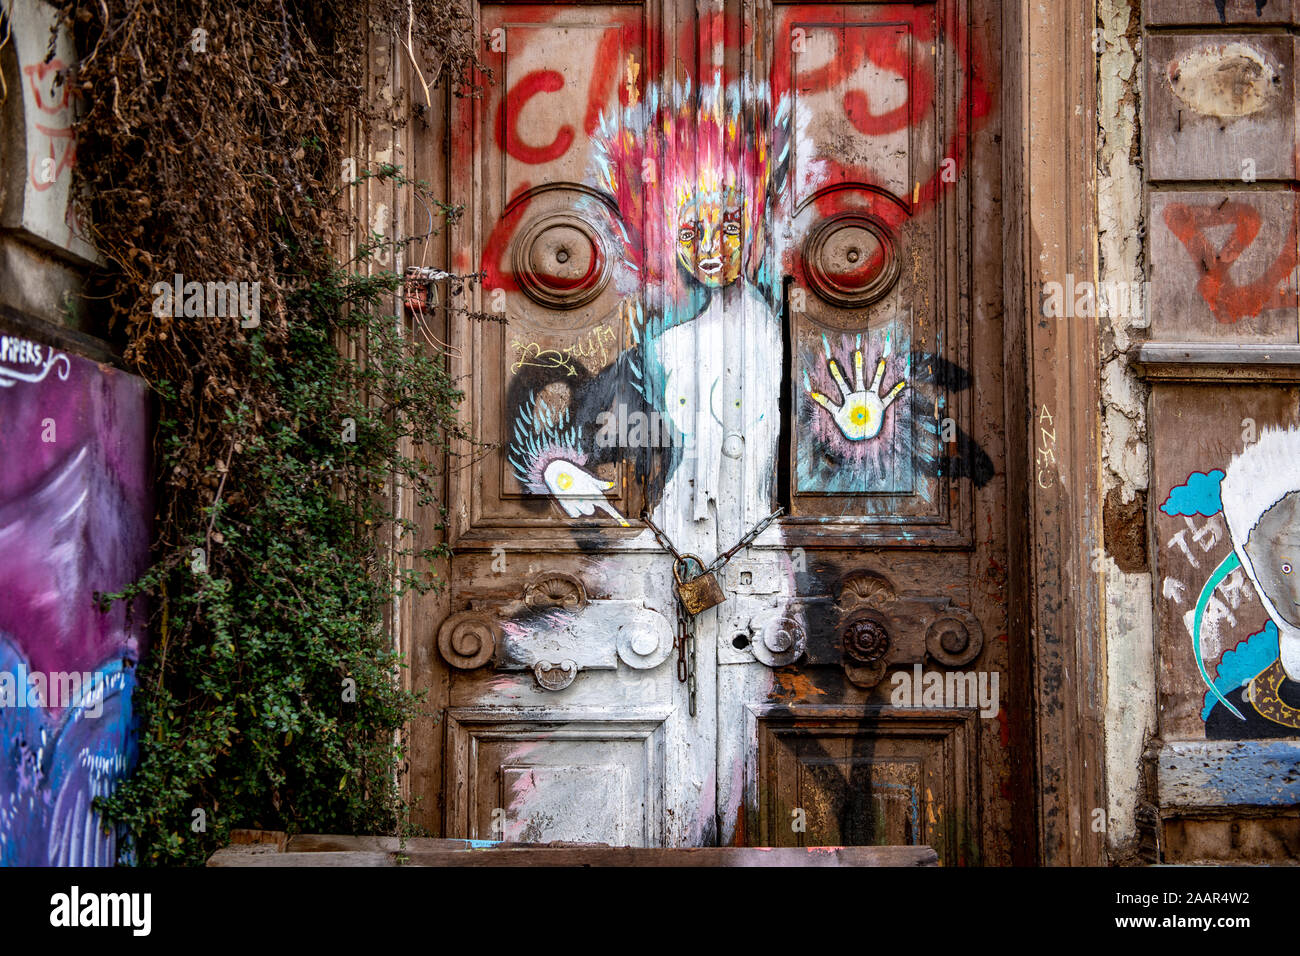 Street art graffiti colorés ornent les murs et les bâtiments de Valparaiso, Chili. Banque D'Images